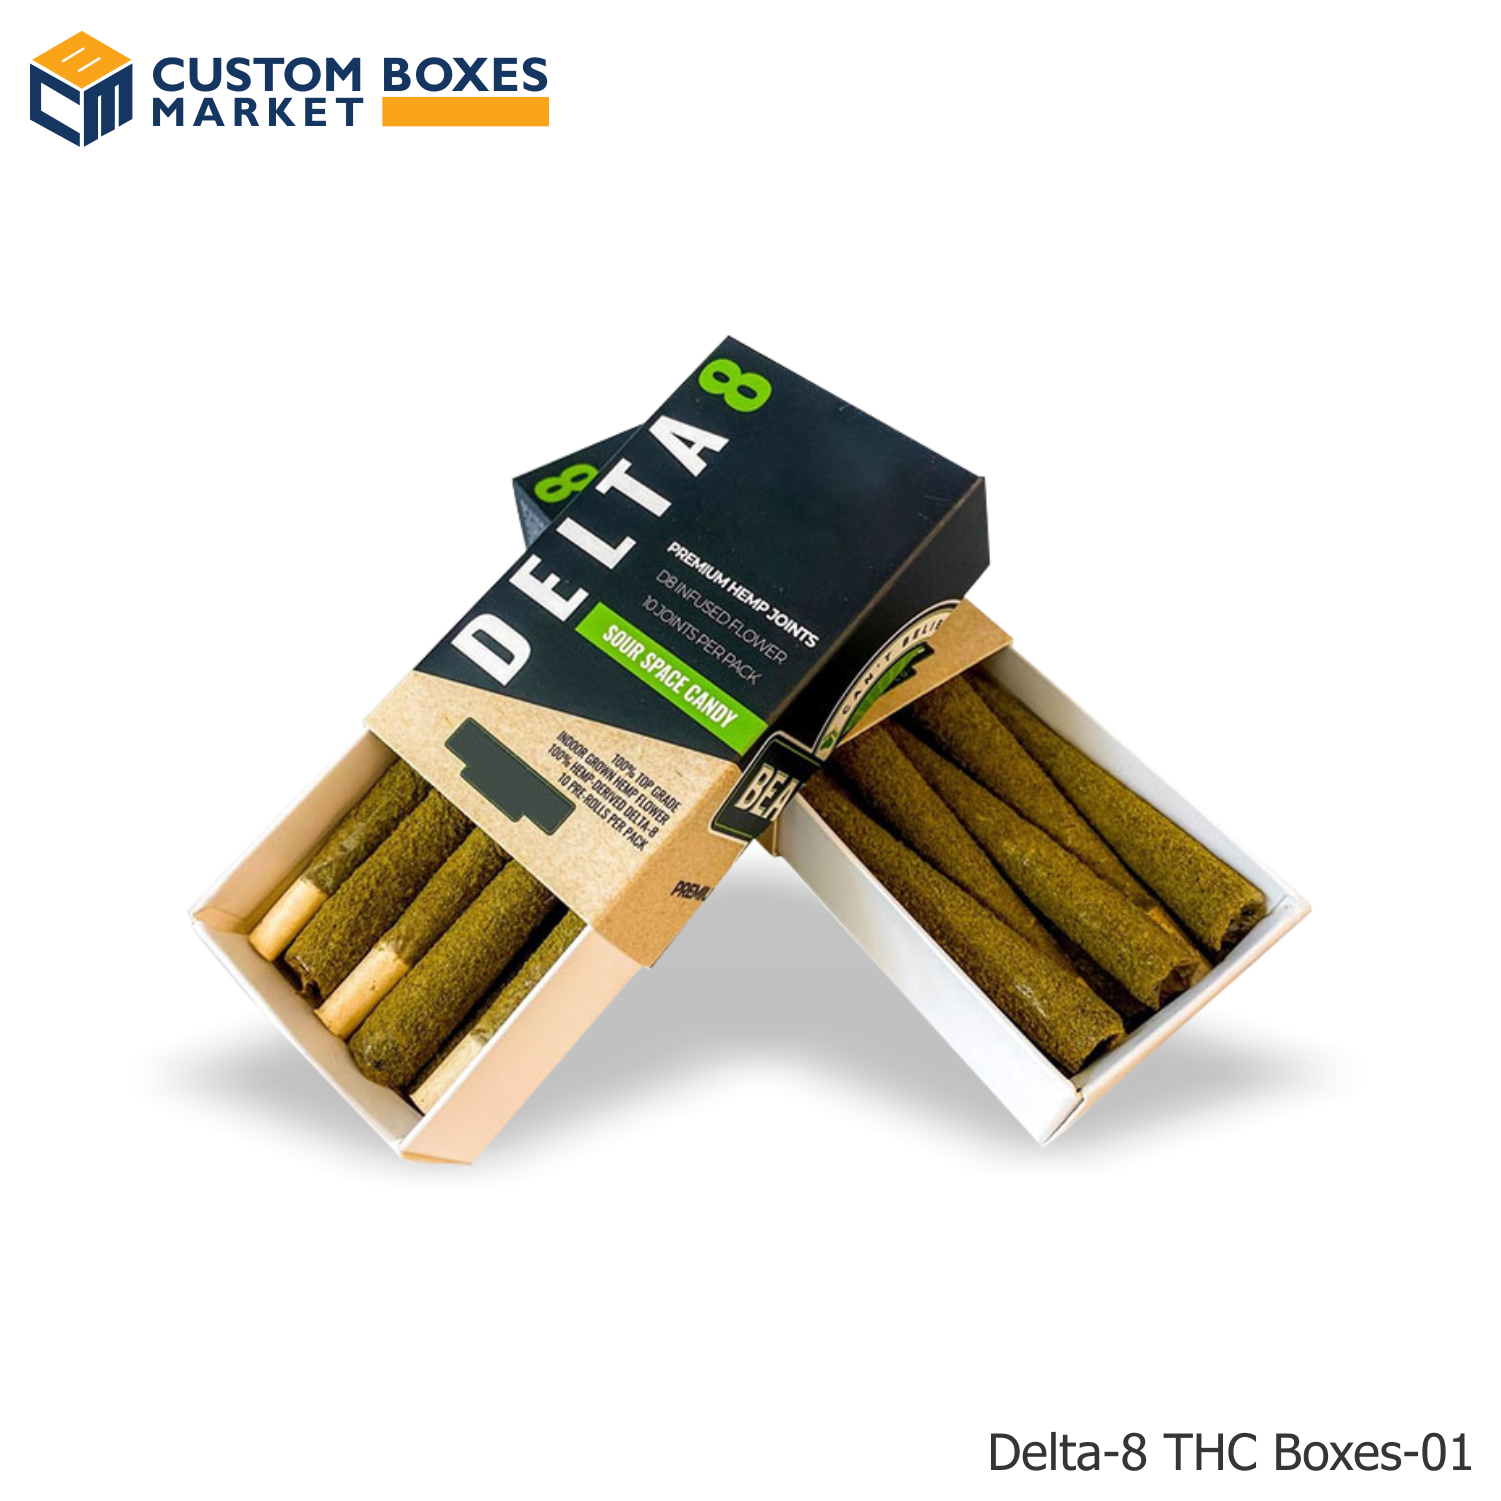 Delta-8 THC Boxes